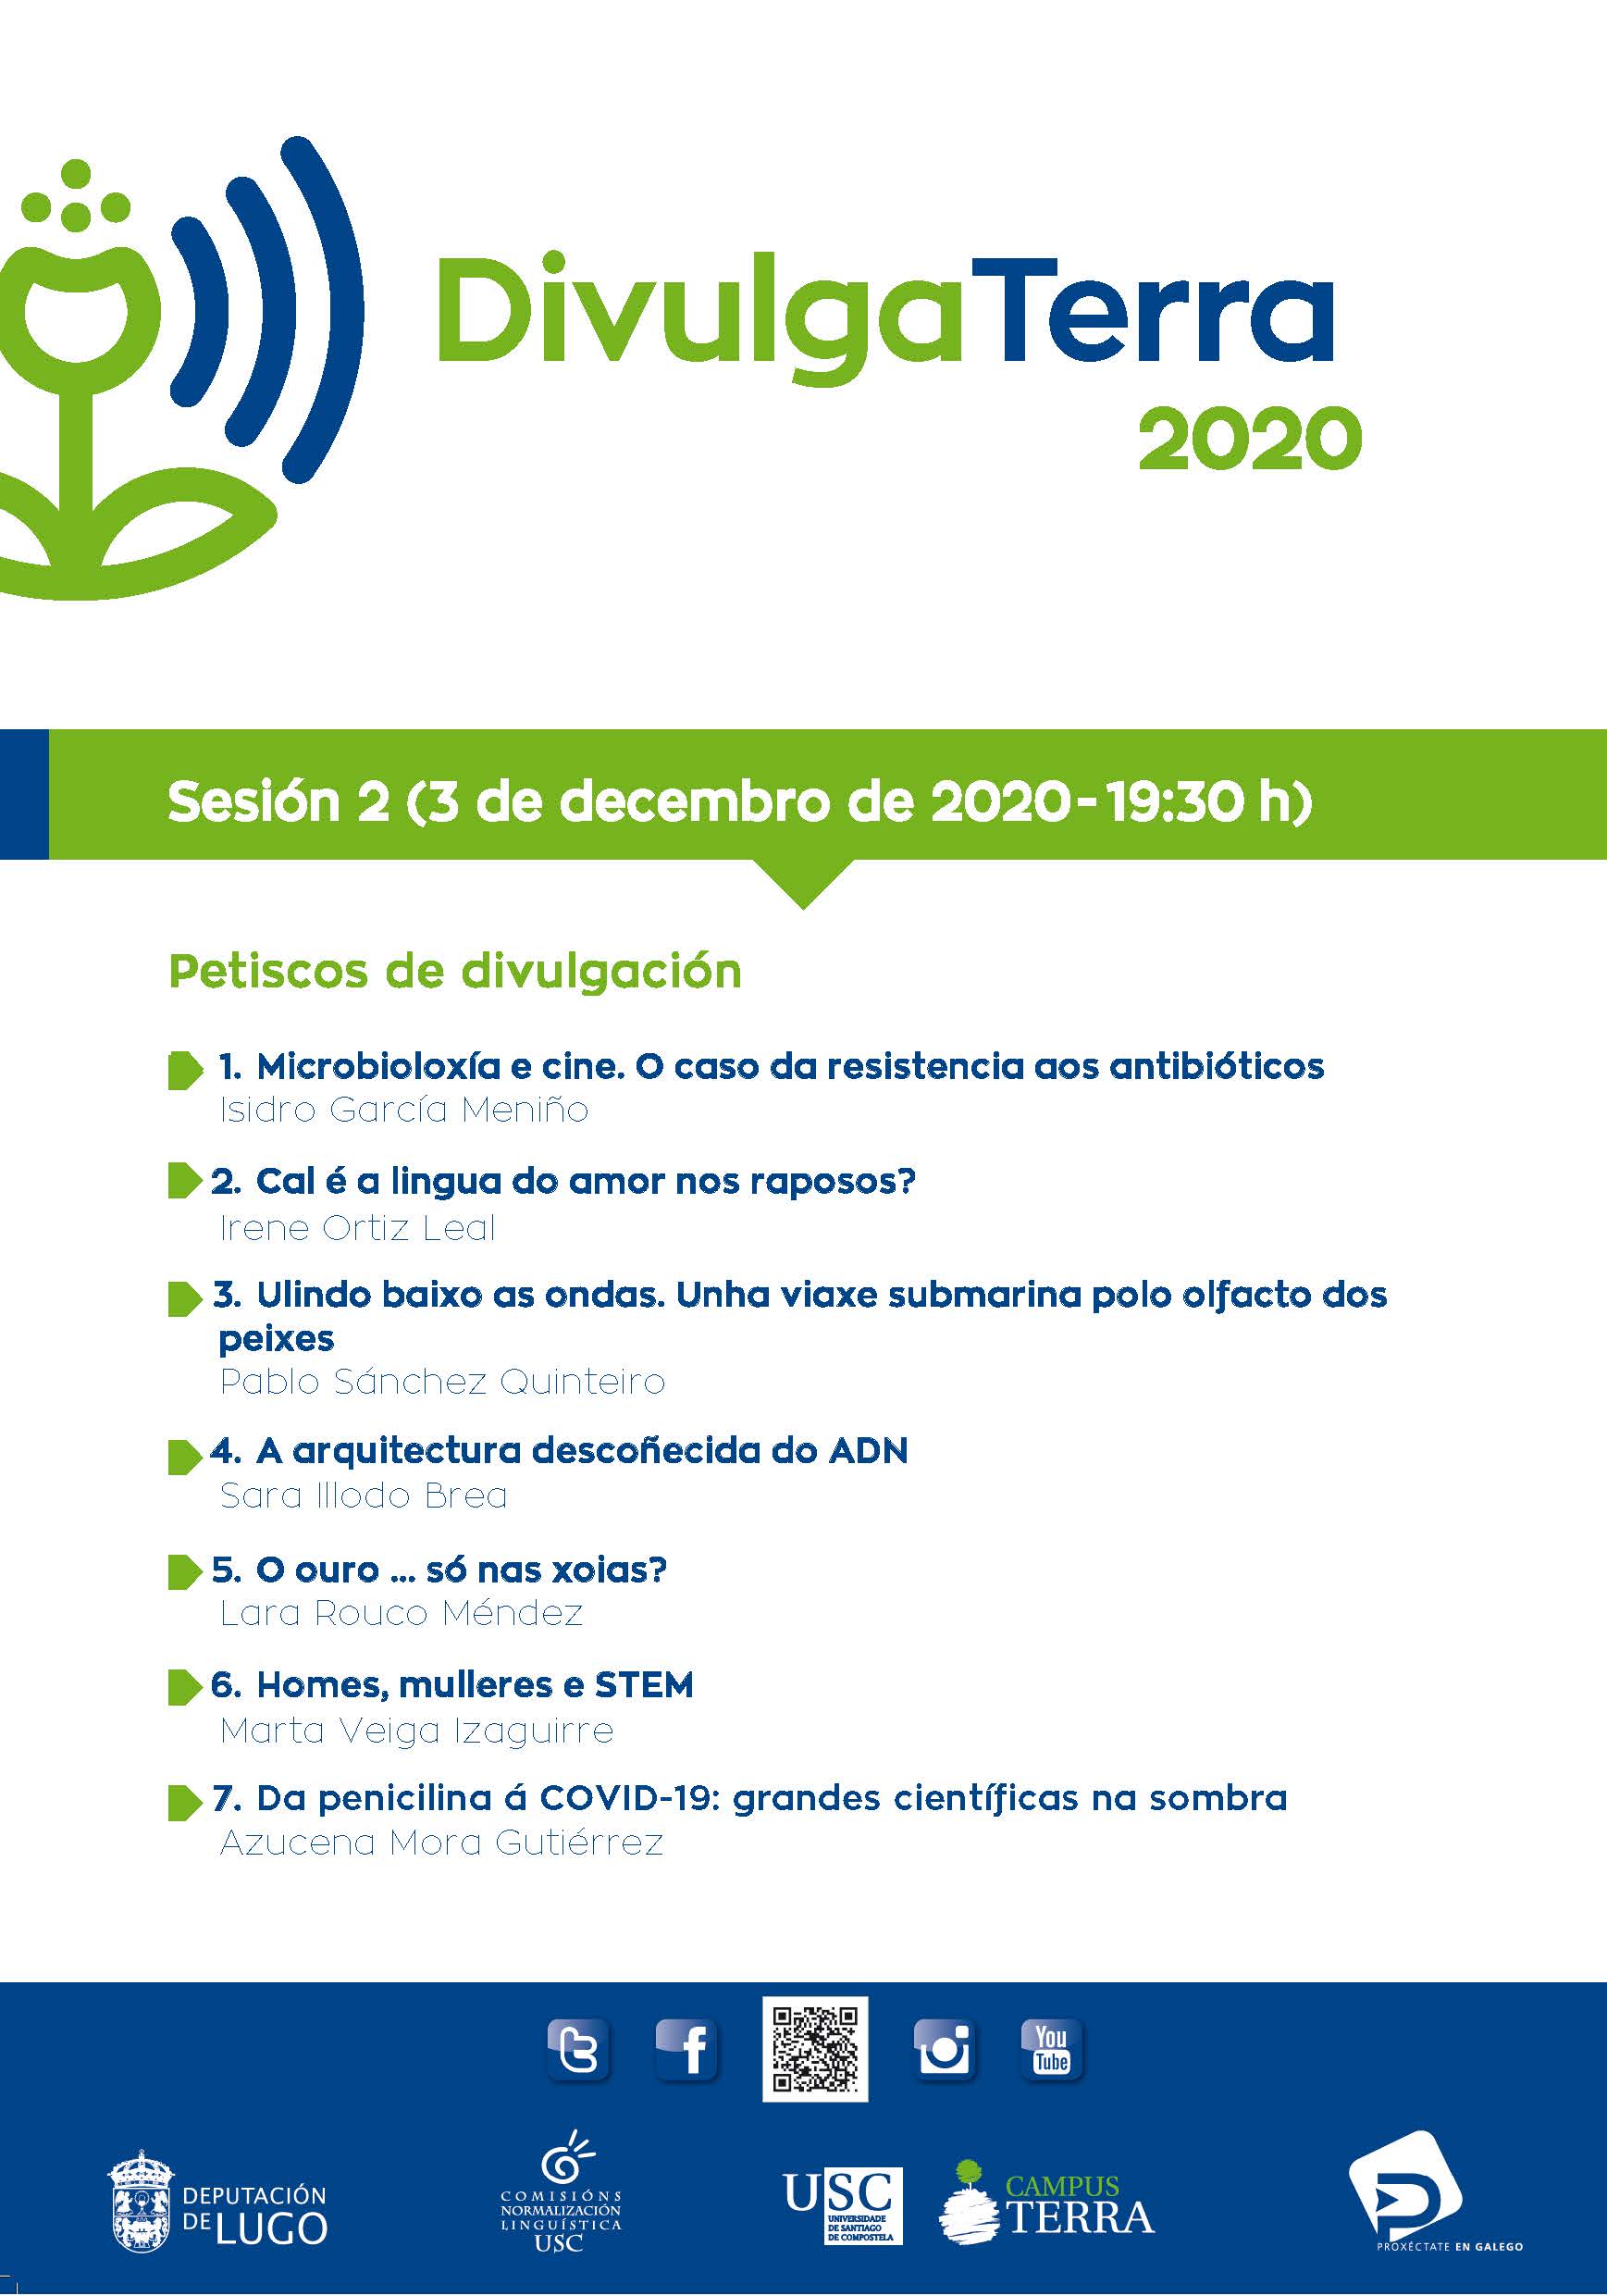 DivulgaTerra 2020